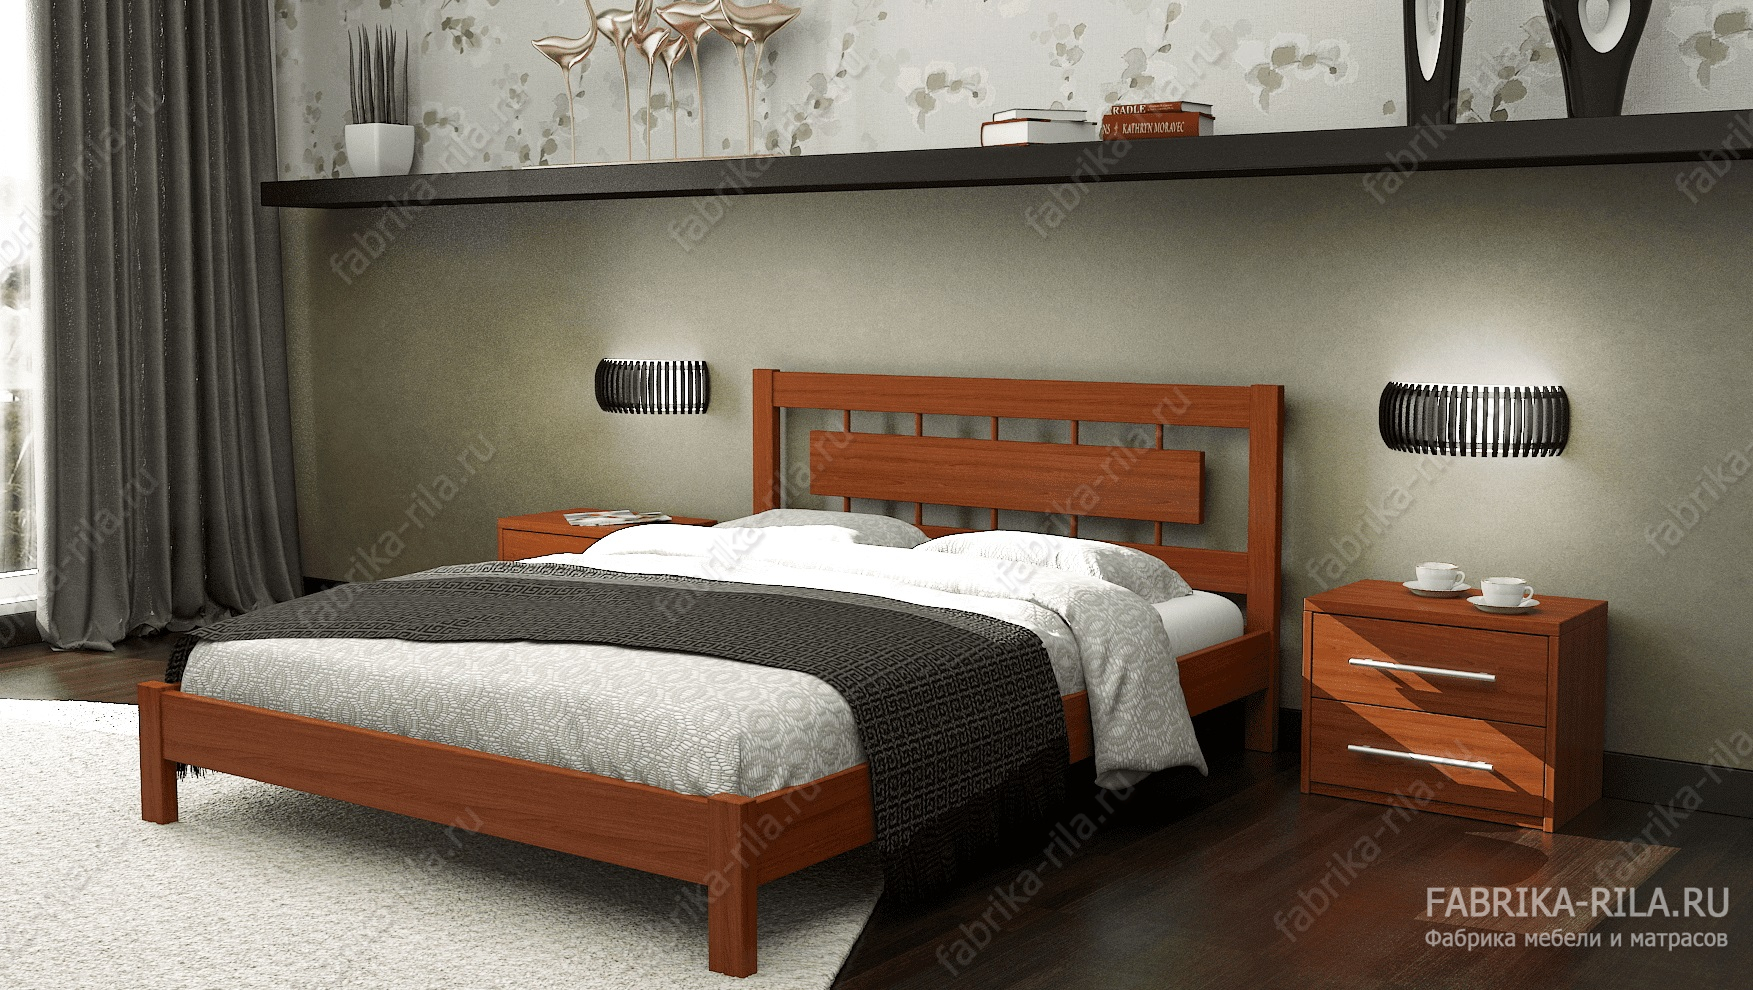 Кровать Sakura 1 — 90x190 см. из сосны